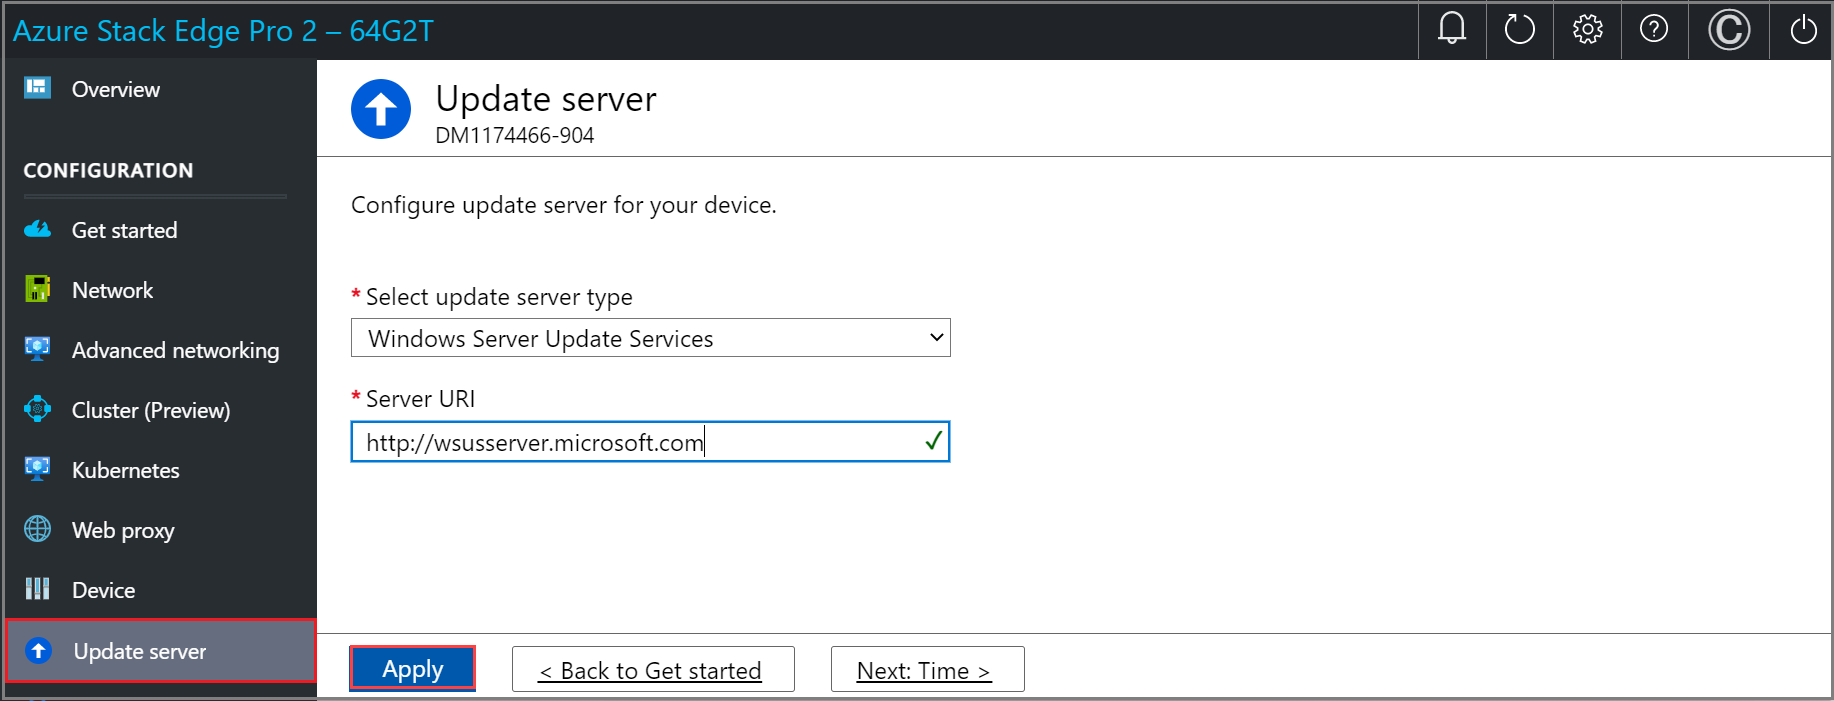 Capture d’écran de la page Mettre à jour le serveur avec Windows Server Update Services configuré dans l’interface utilisateur web locale d’un appareil Azure Stack Edge. Le bouton Appliquer est mis en évidence.